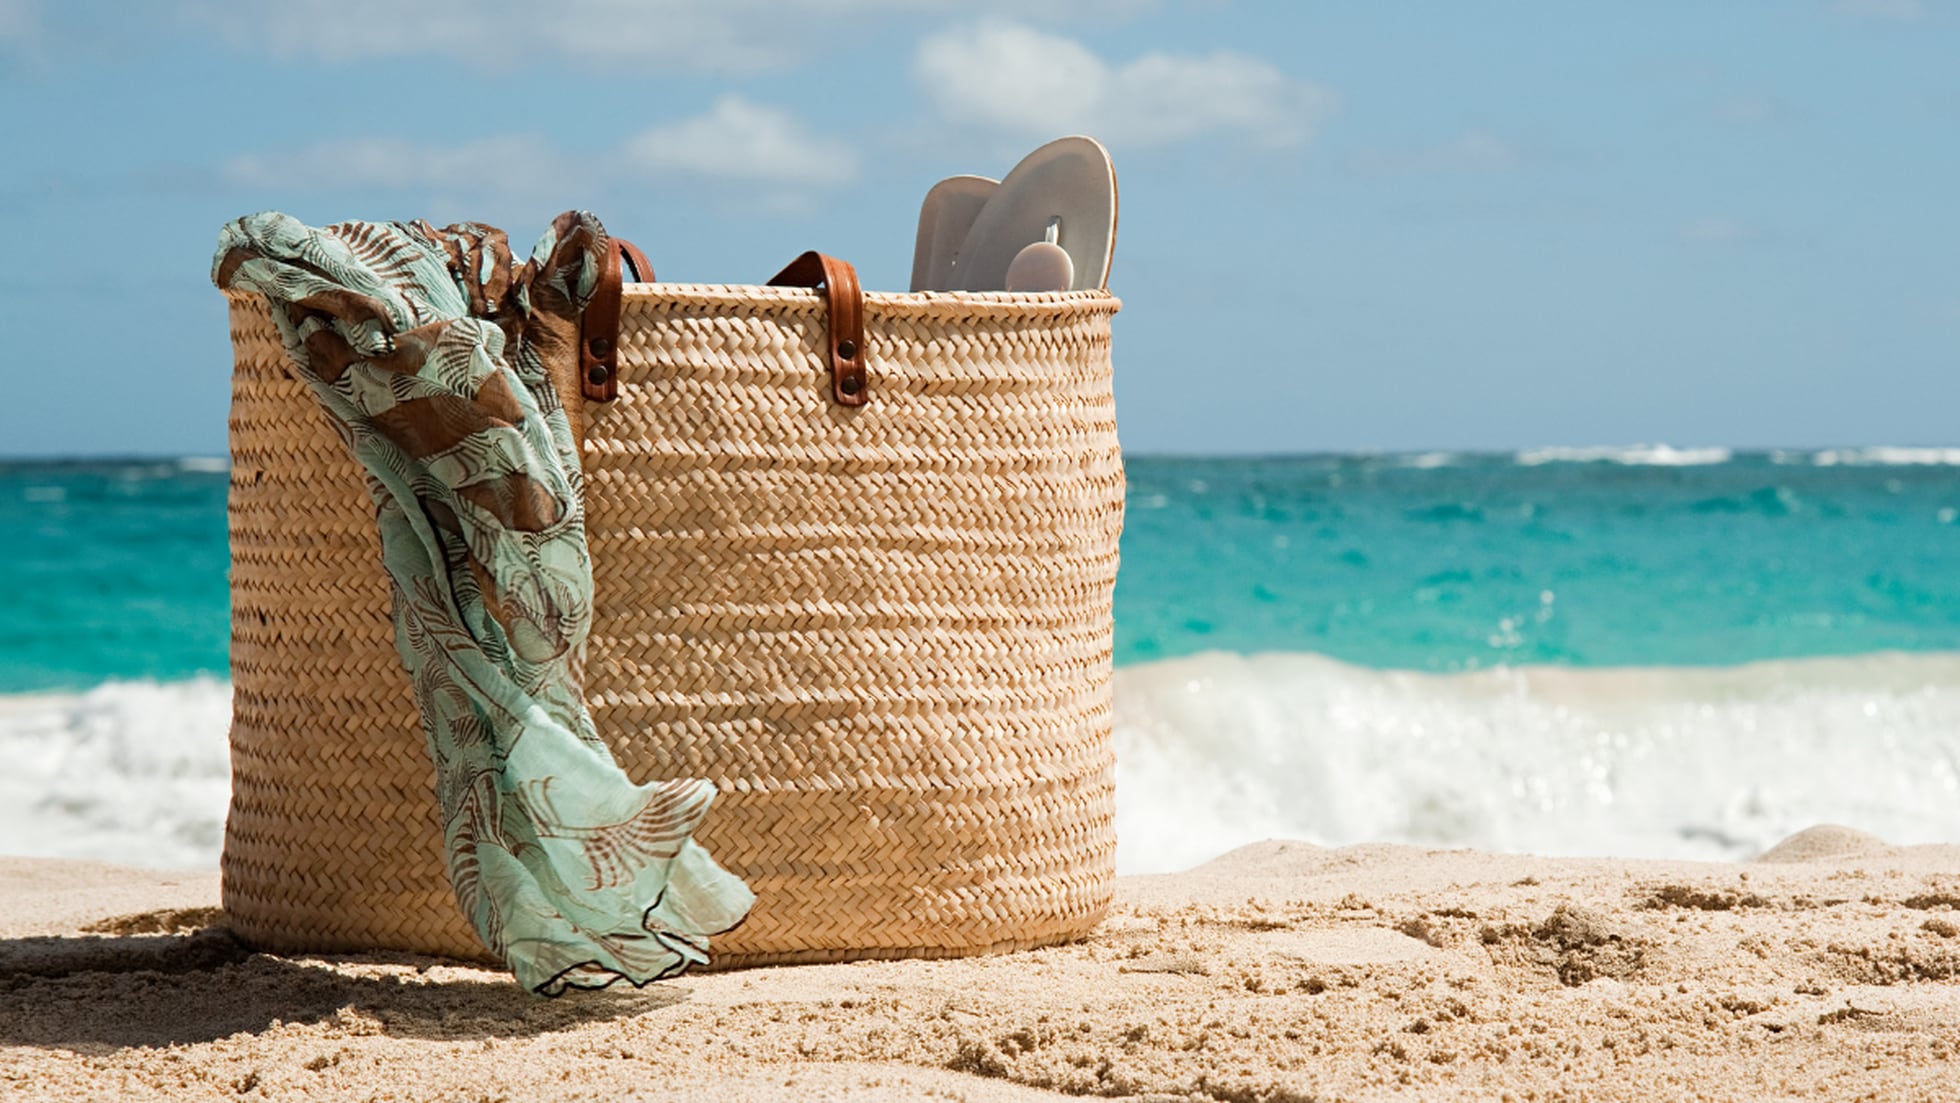 Desafío Sábana matriz Las mejores bolsas para la playa | Escaparate | EL PAÍS